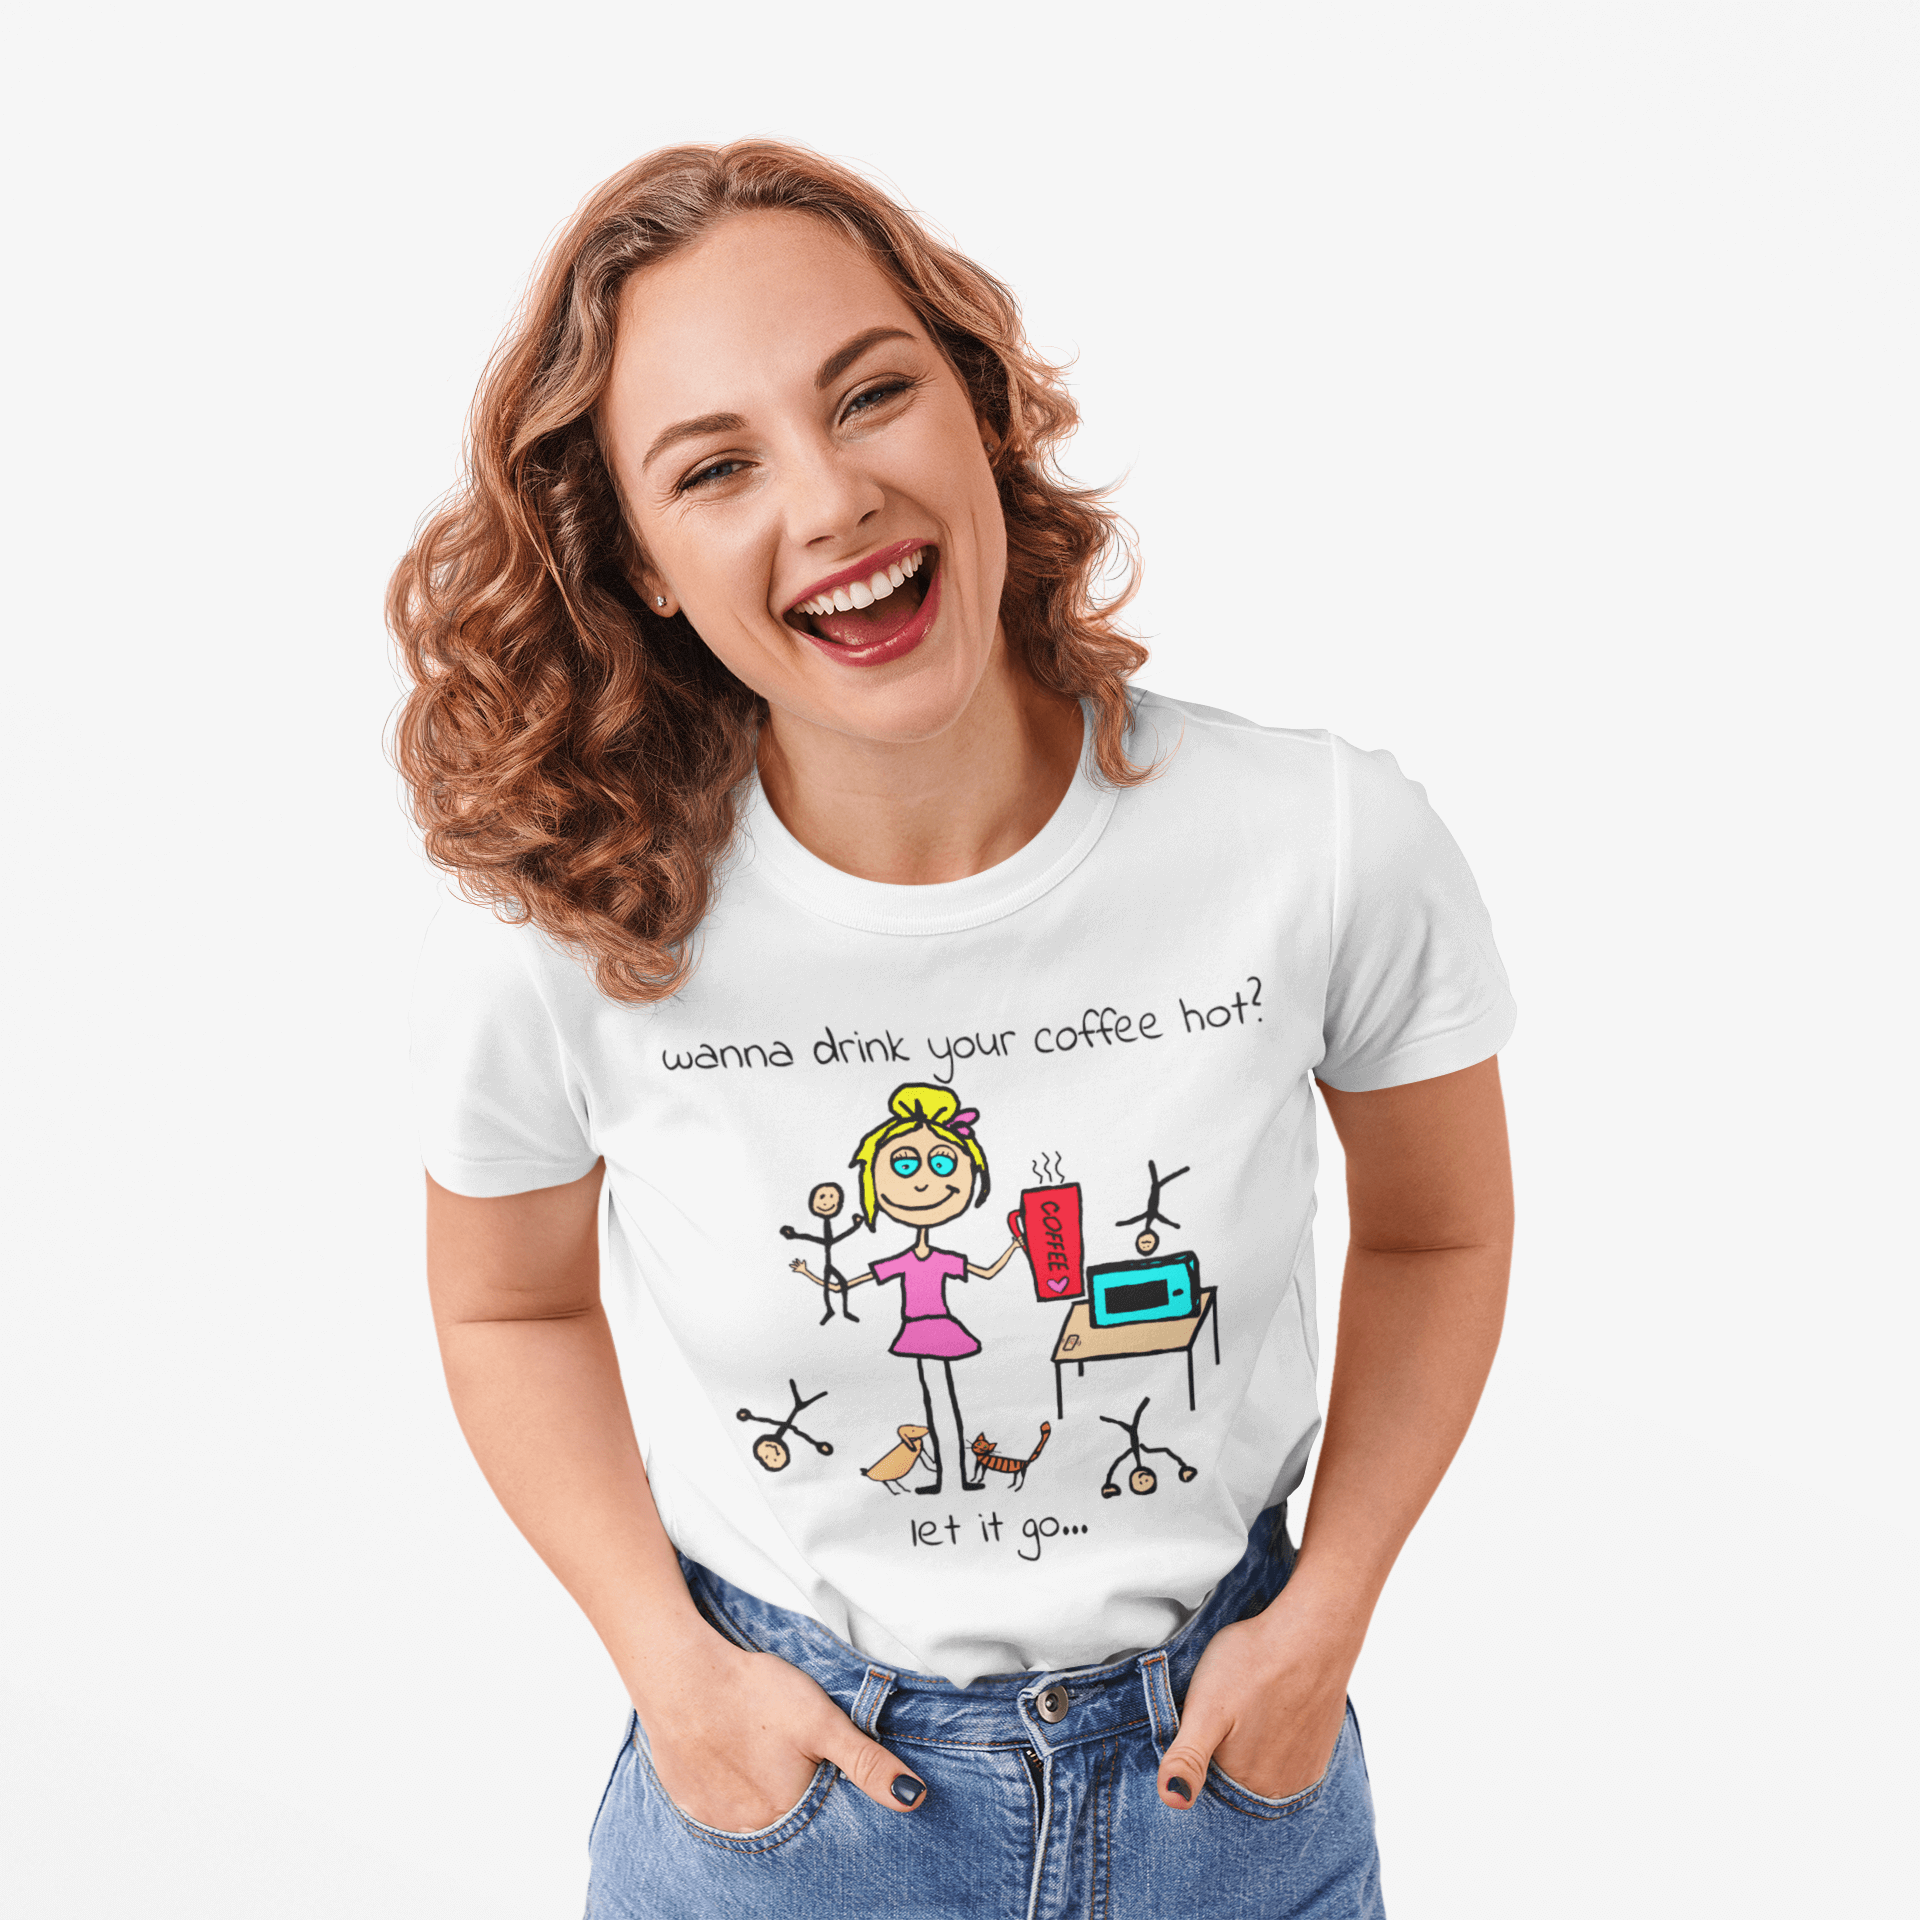 Mom Life Shirts Funny Mom Shirts Mama Shirts Unique Ts Inspiflow 